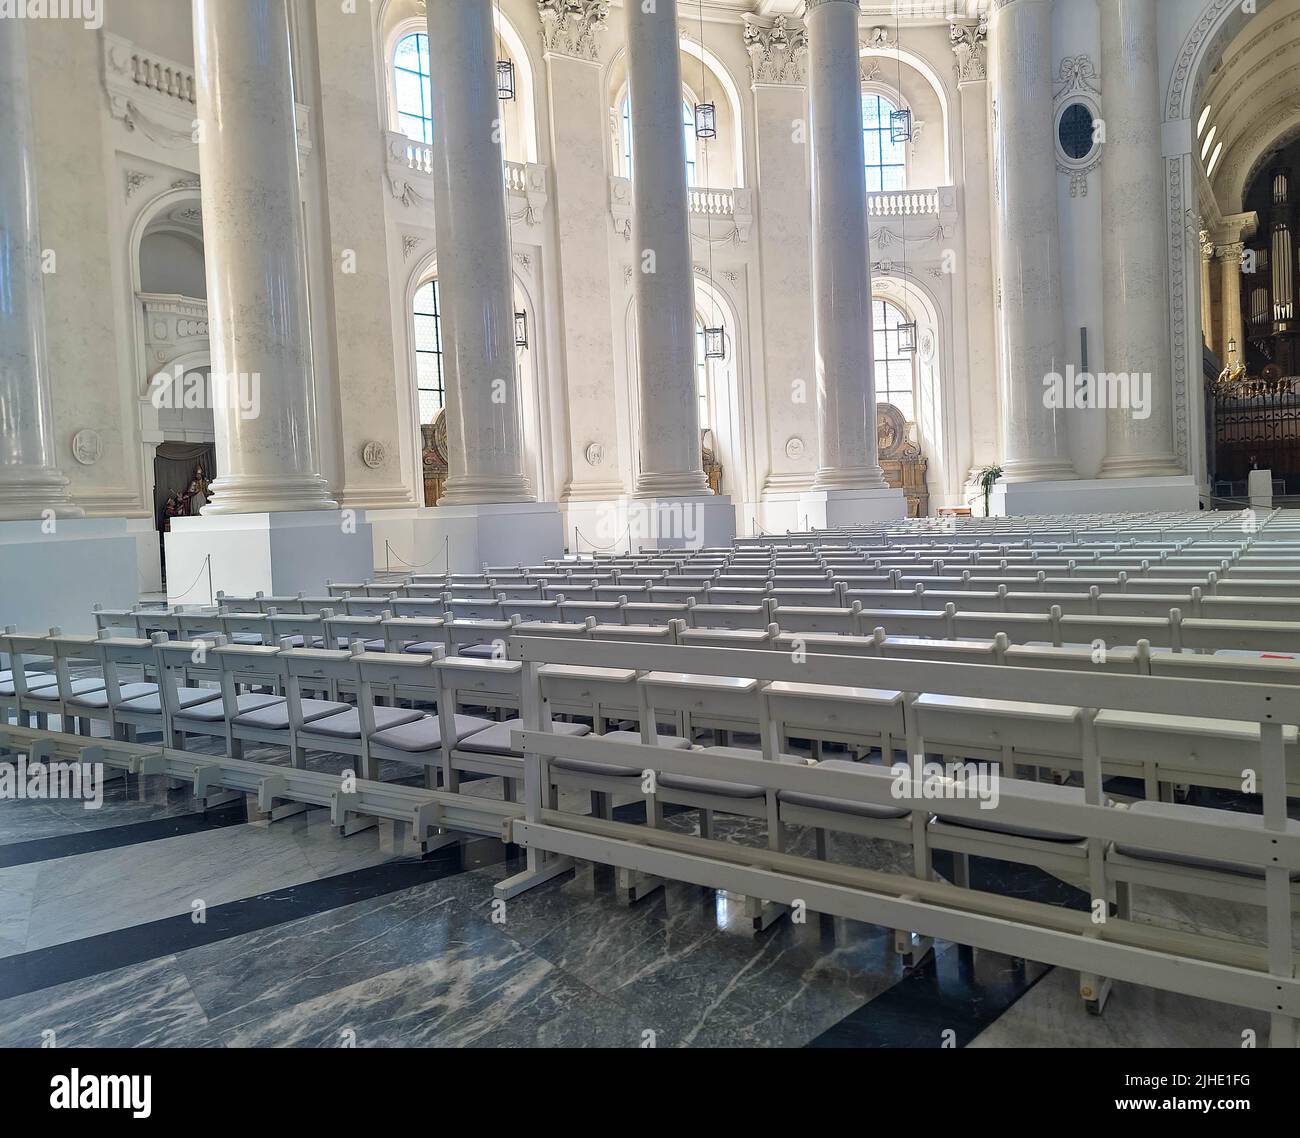 Les célèbres sièges blancs et colonnes en marbre de la cathédrale Saint-Blasien dans la Forêt-Noire, en Allemagne Banque D'Images